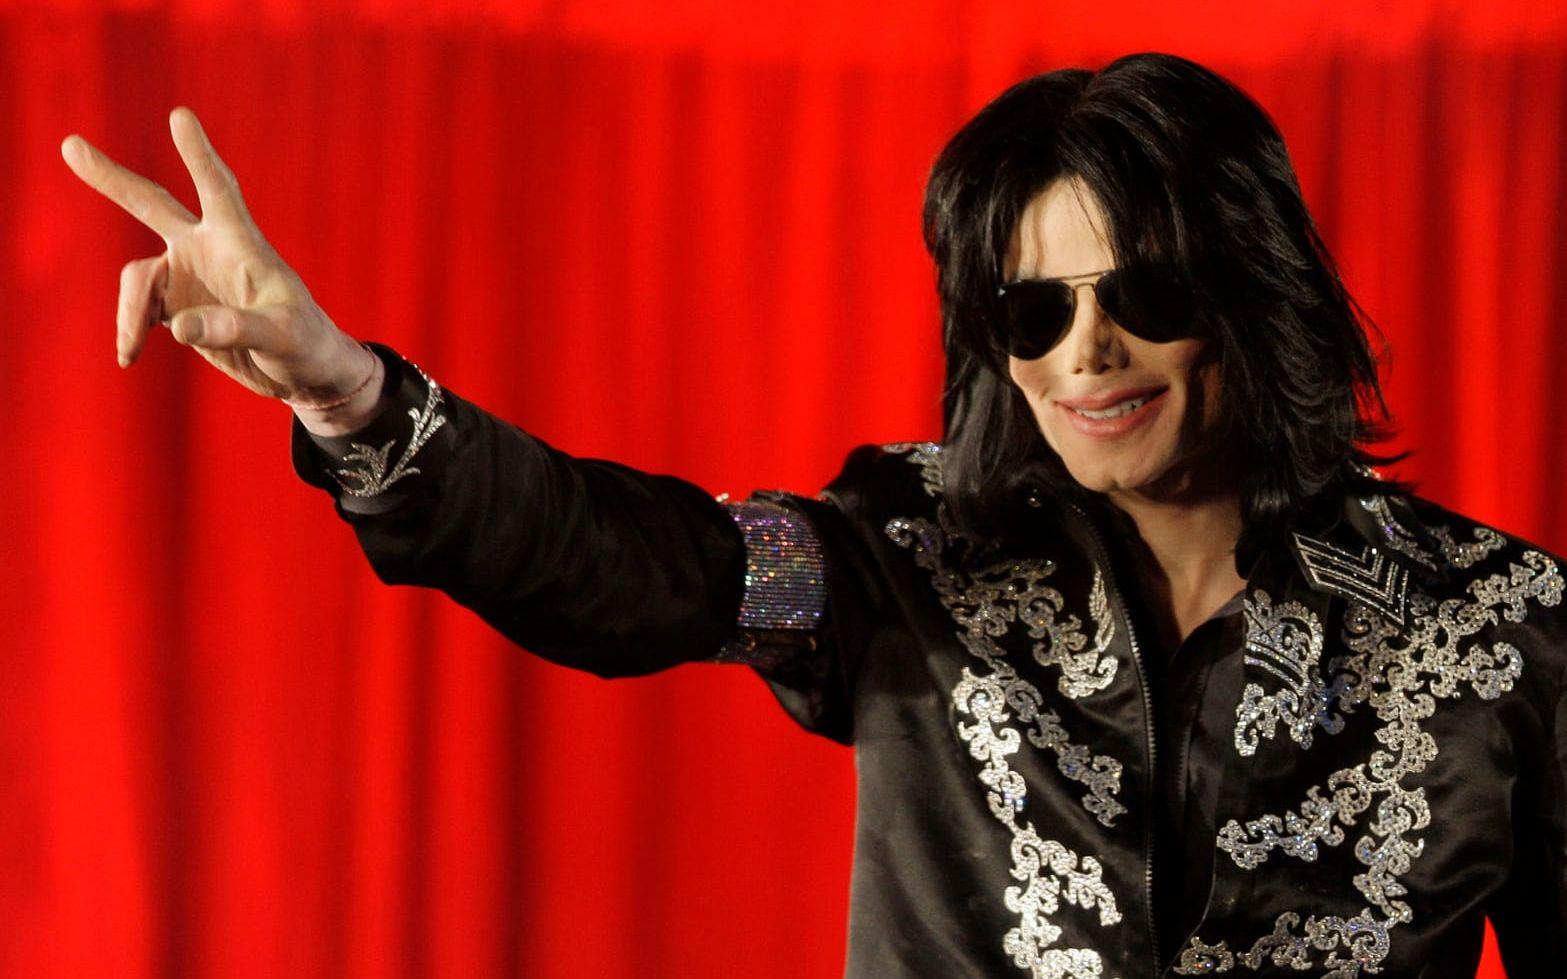 På tredje plats hittar vi "Thriller" av Michael Jackson. Bild: TT